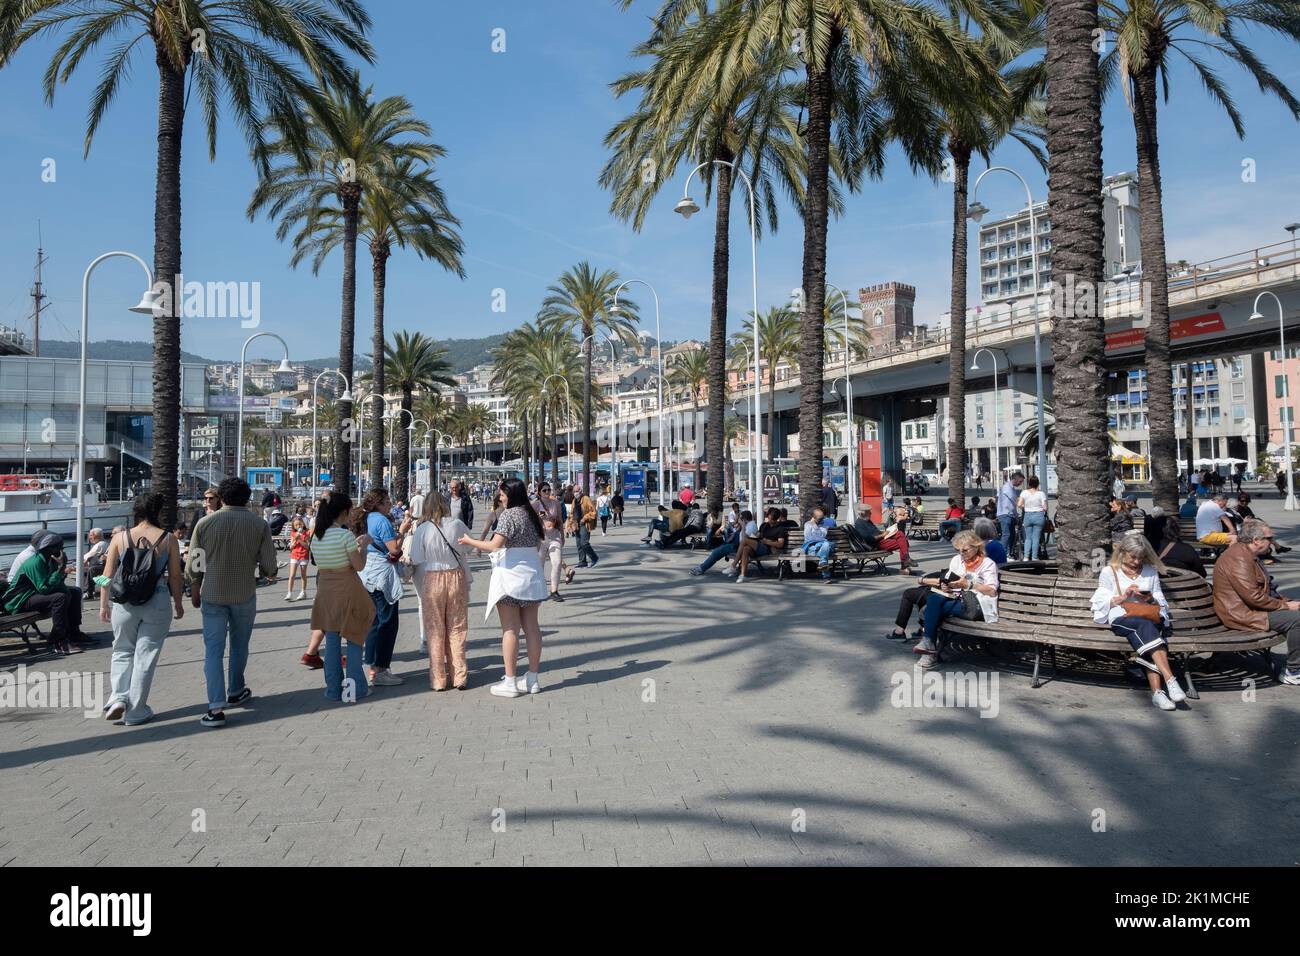 Promenade at the Genoa port or porto antico in Liguria region, Italy Stock Photo